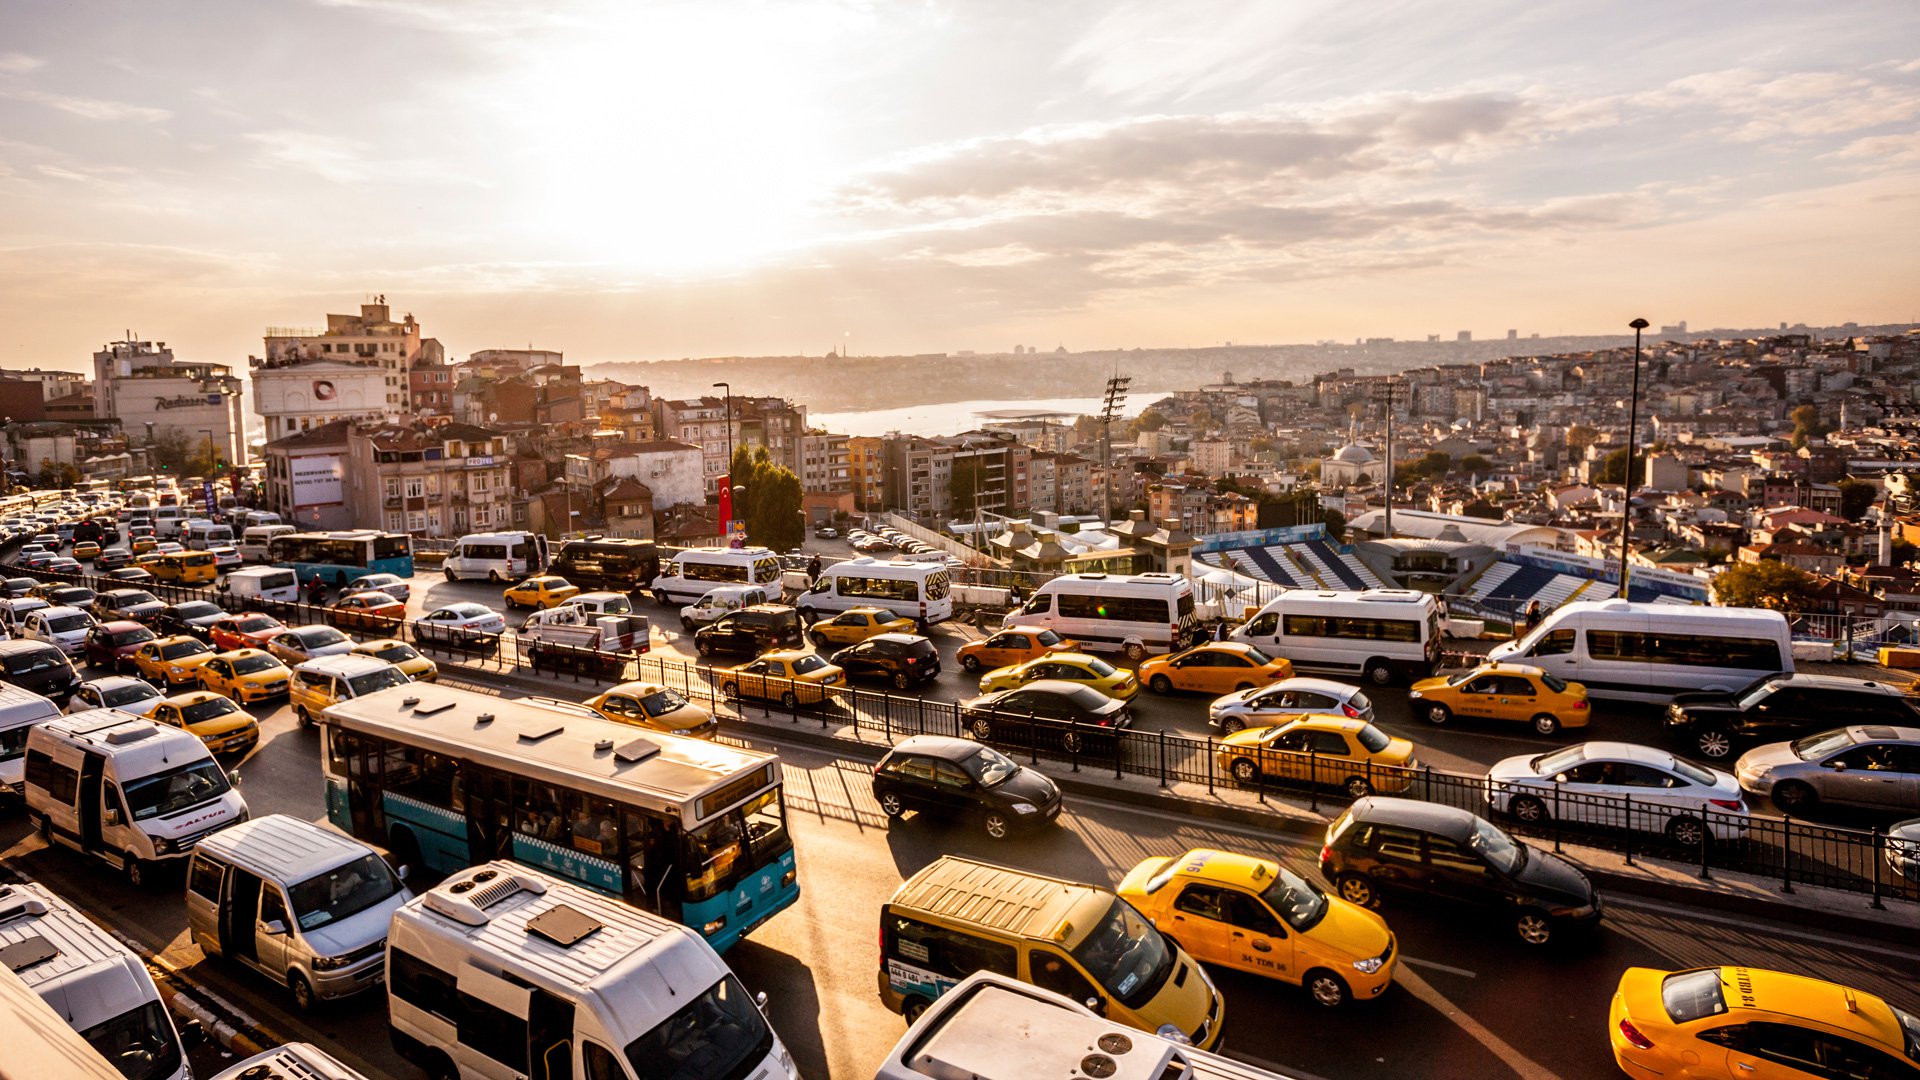 أكثر الأماكن صخباً في مدينة إسطنبول بحسب دراسة رسمية